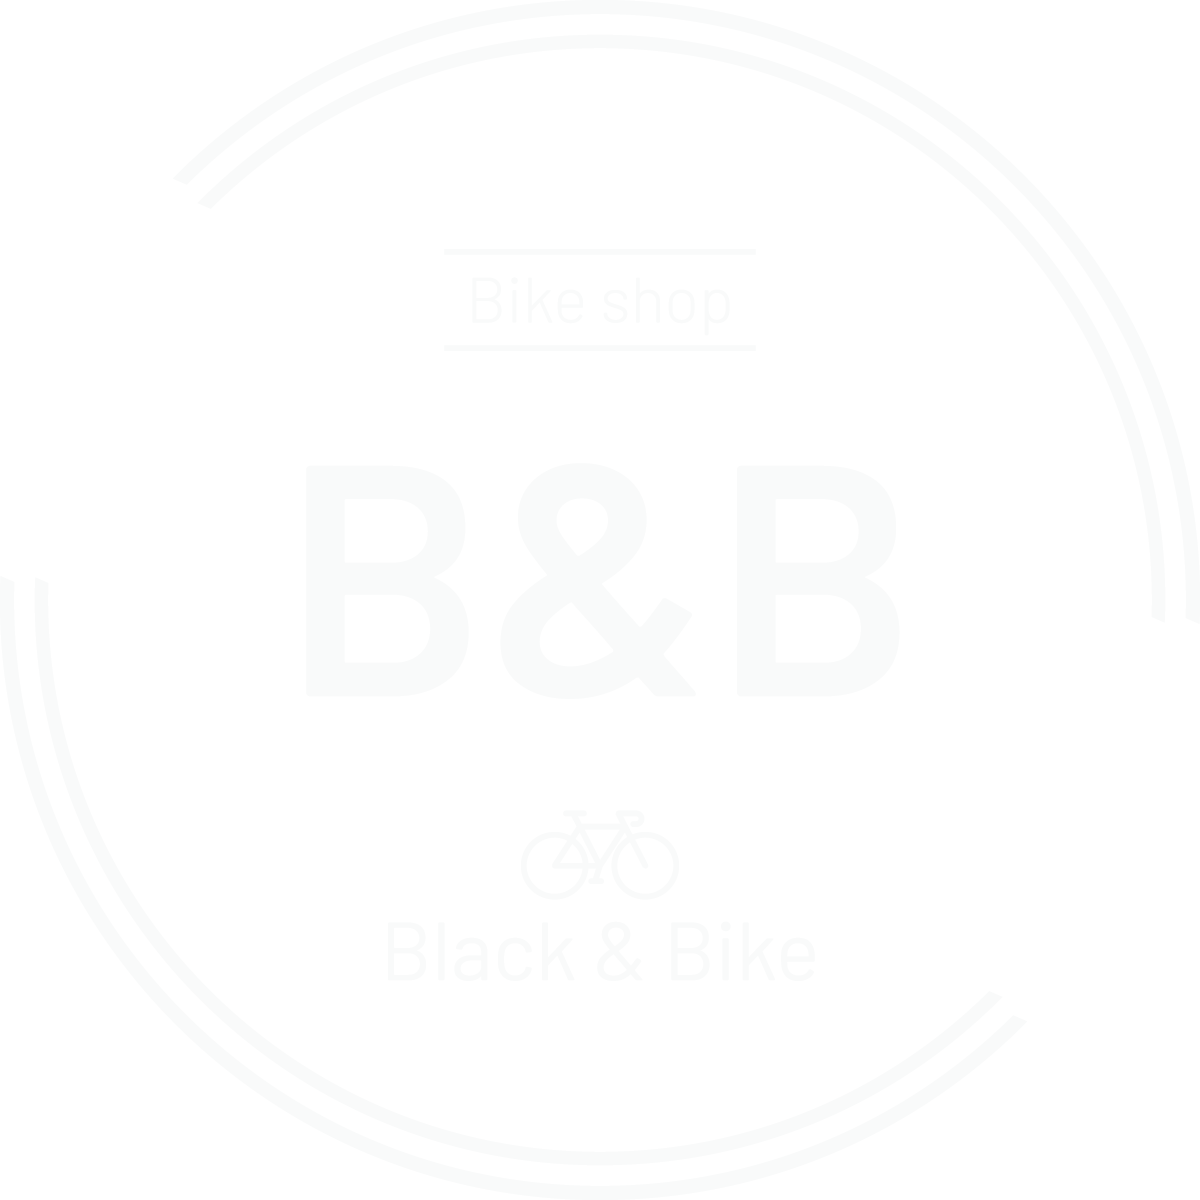 Magasin de vélos Black & Bike situé à Gerpinnes. Trek-BMC-Cube